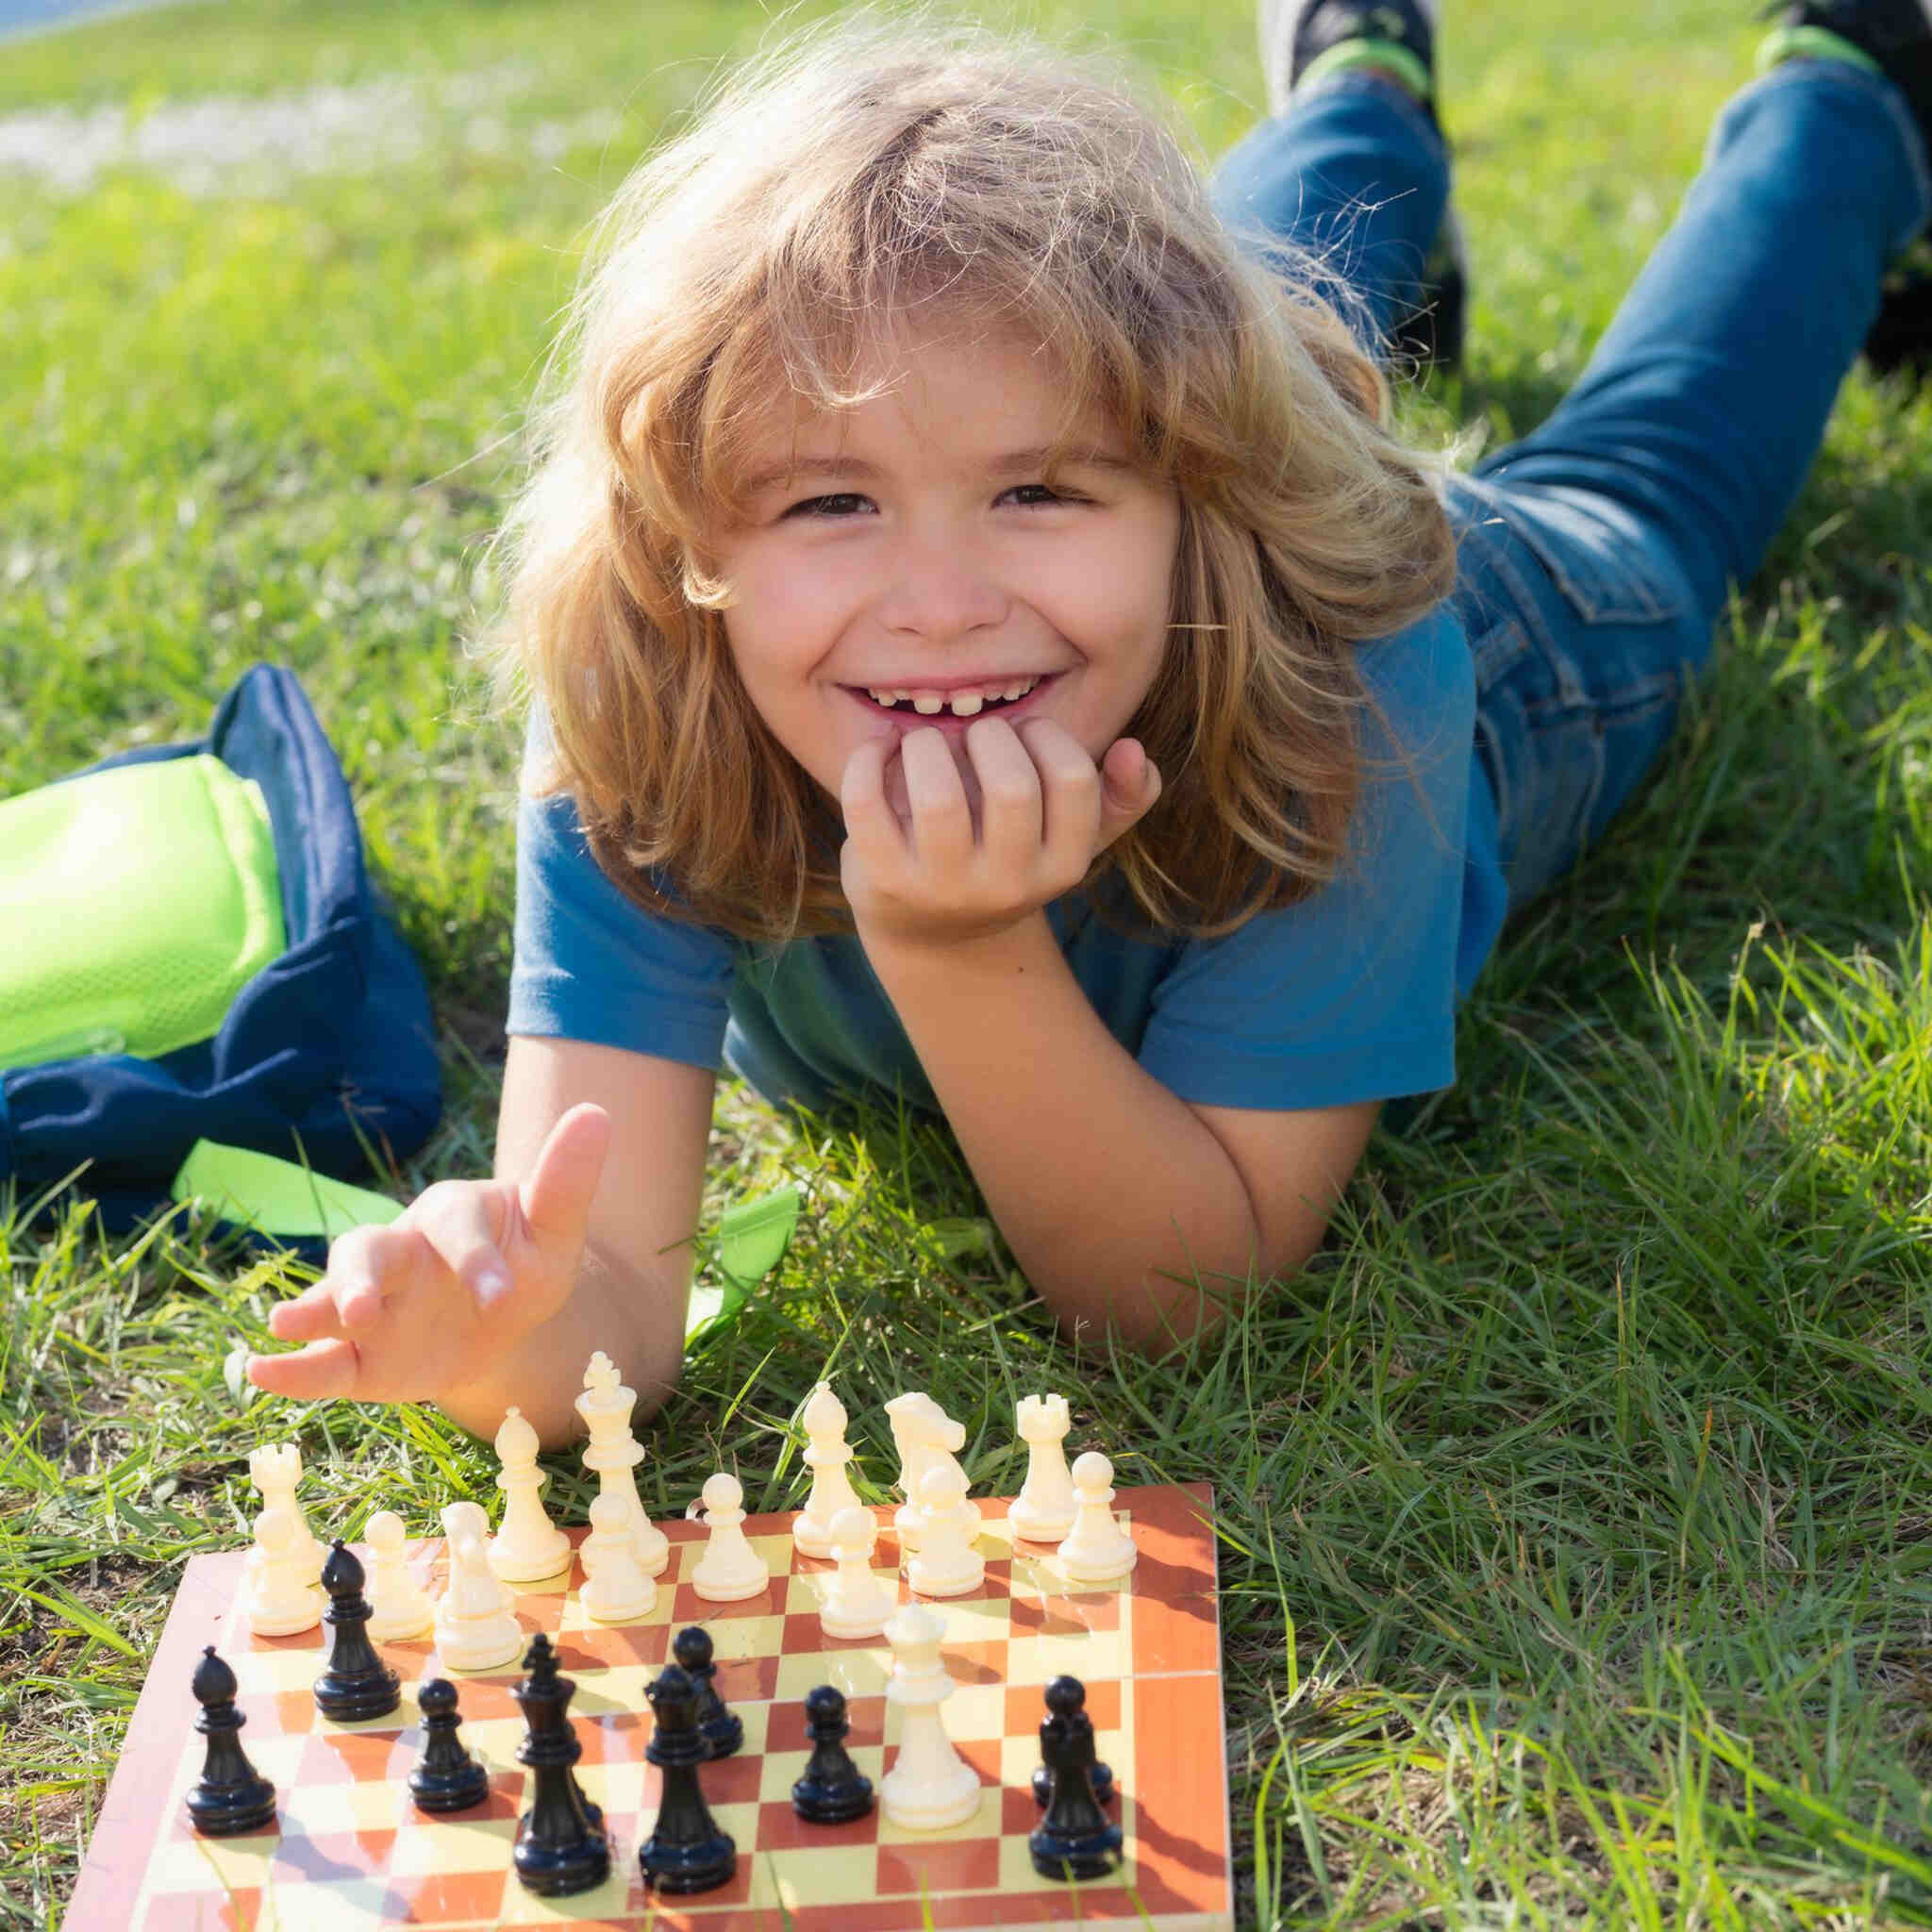 dziecko-mysli-o-szachach-lezacych-na-trawie-w-letnim-parku-koncepcja-uczenia-sie-i-dorastania-dzieci-szachowy-sukces-i-wygrana-gra-na-swiezym-powietrzu-hobby-i-styl-zycia-dzieci_Easy-Resize.com